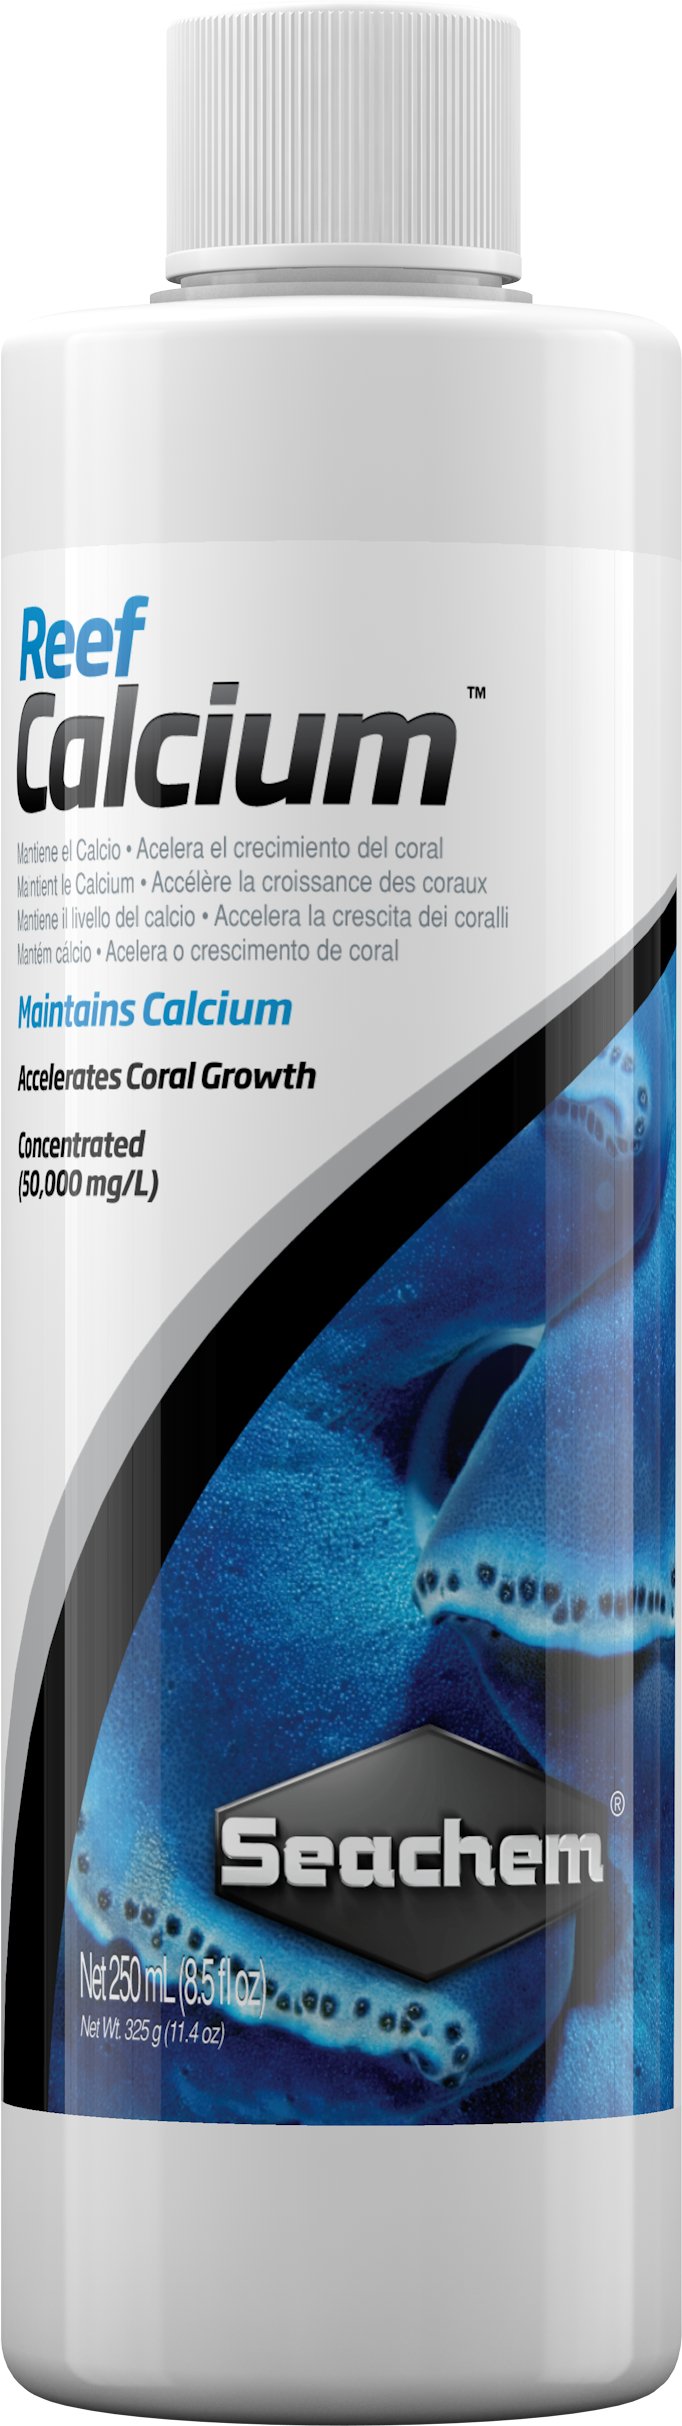 Reef Calcium - Discus Roa Fish